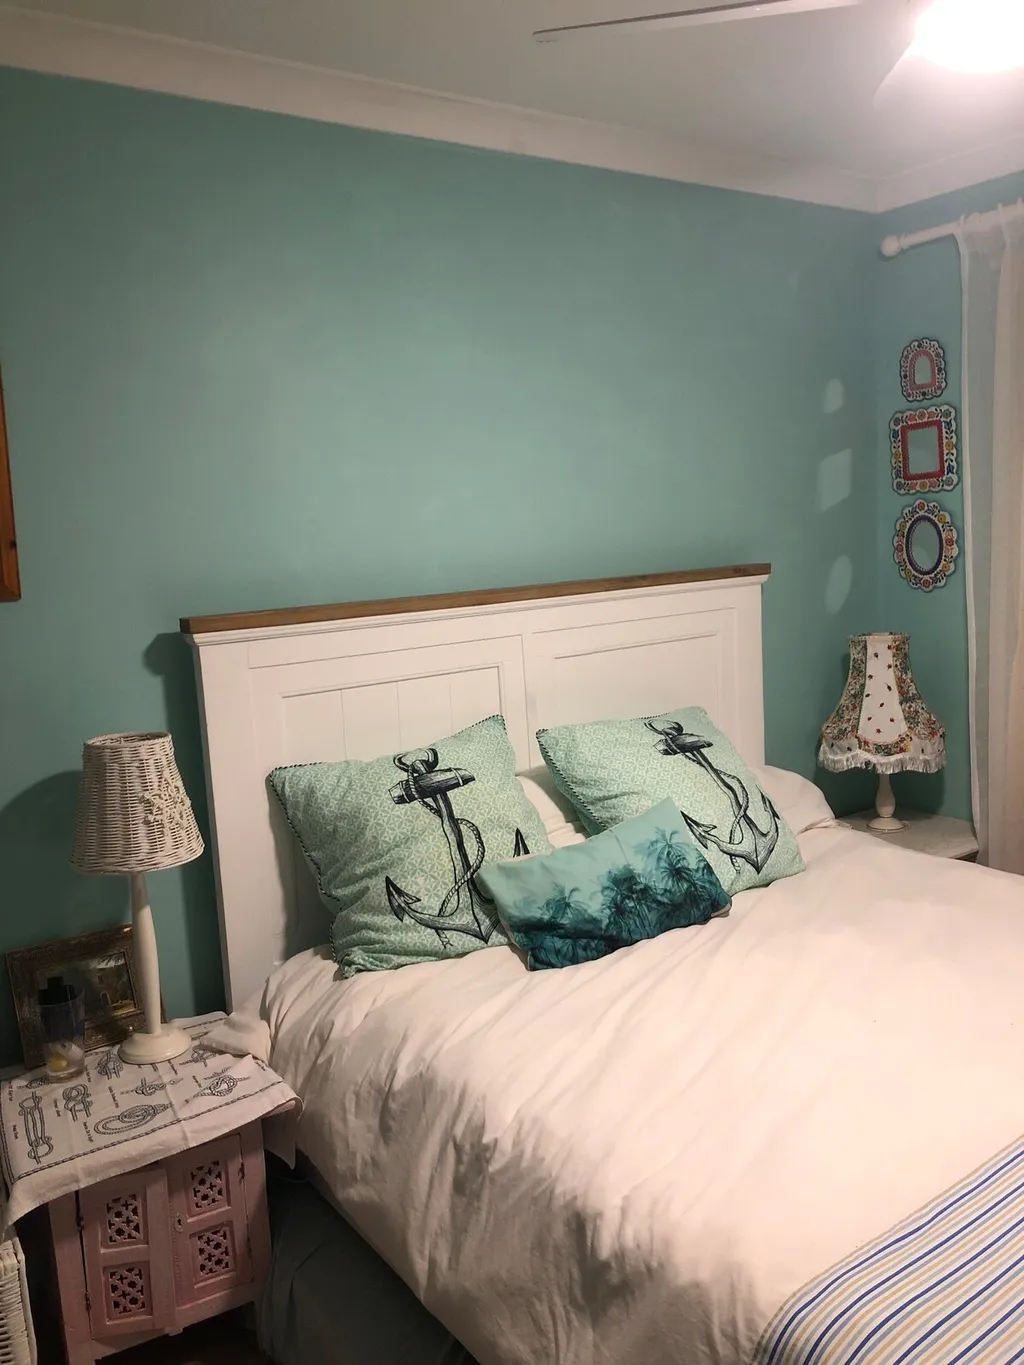 Màu xanh ngọc kết hợp với trắng trong không gian phòng ngủ